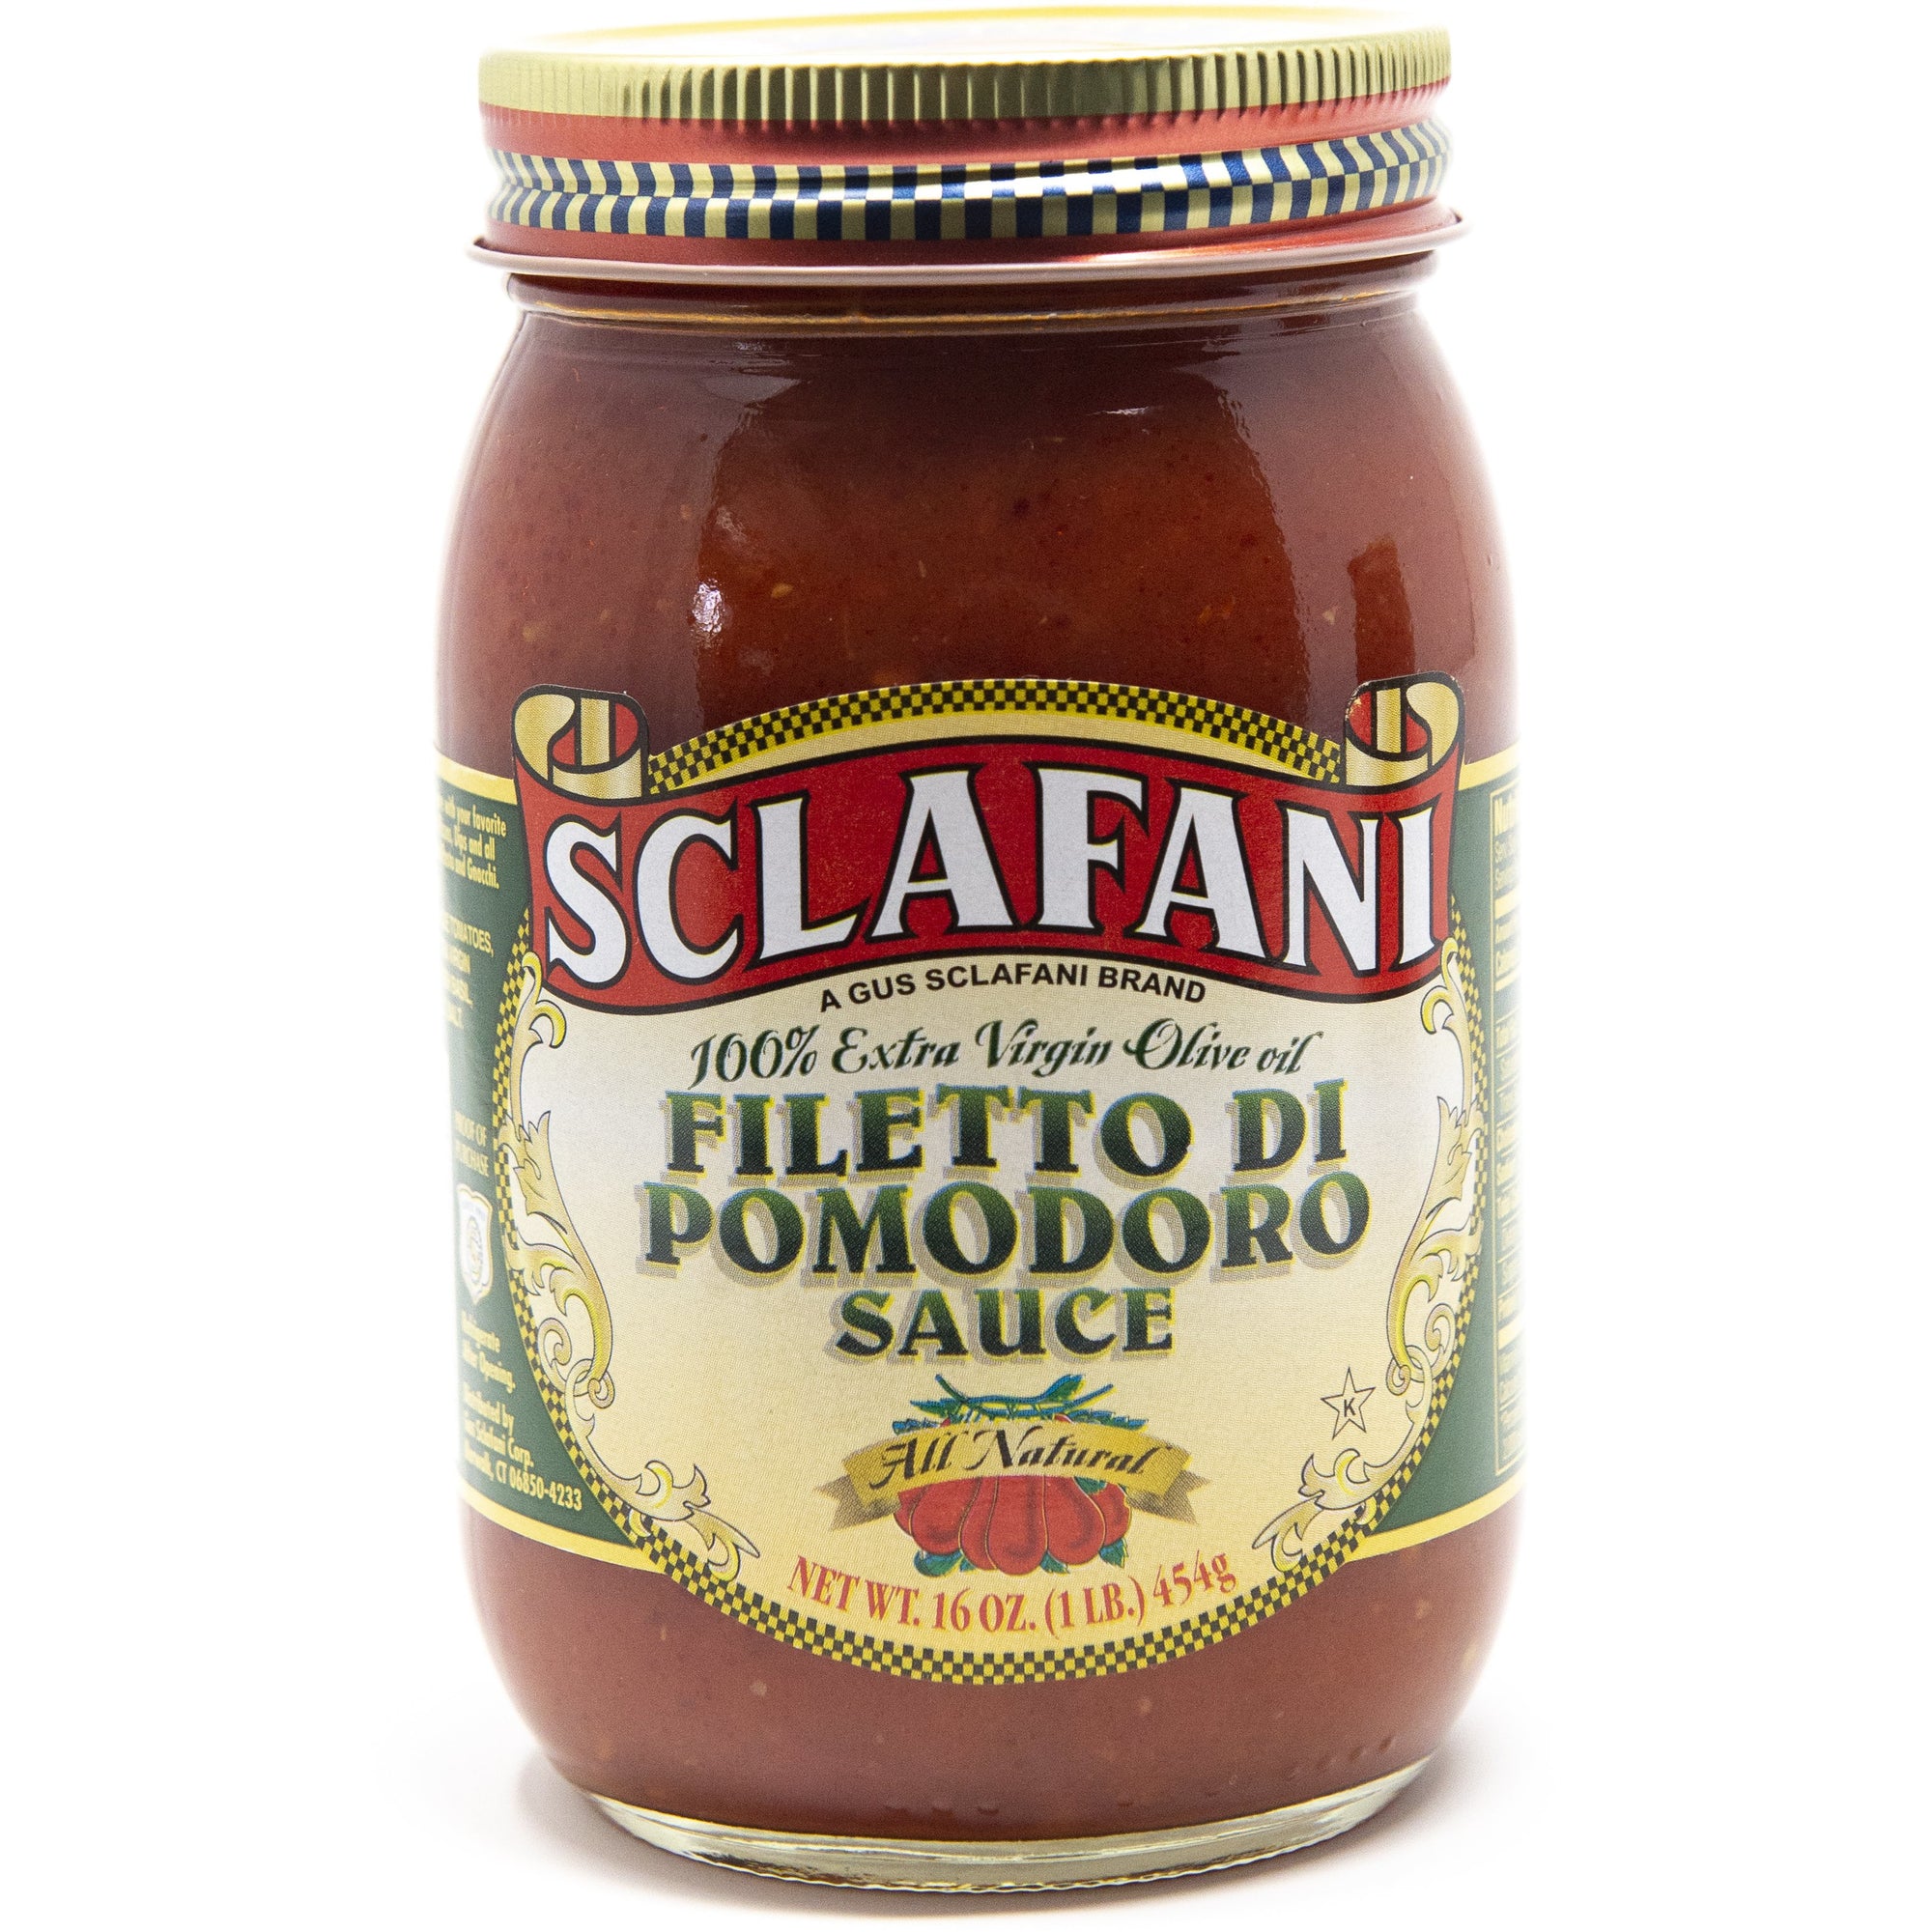 Sclafani Filetto Di Pomodoro Sauce 32 oz.